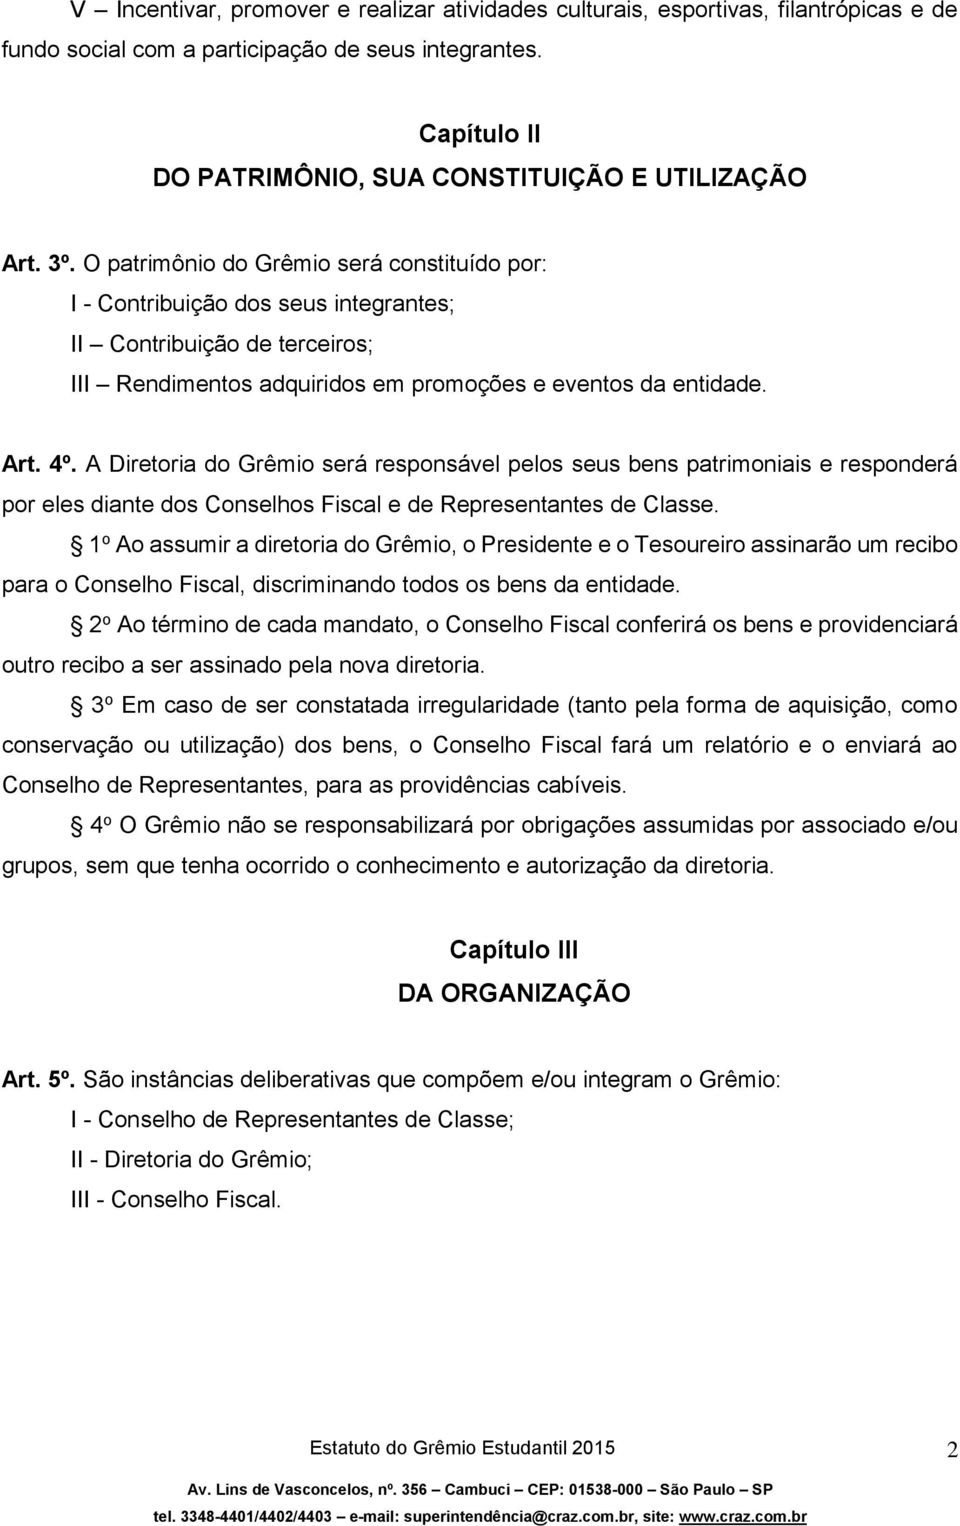 A Diretoria do Grêmio será responsável pelos seus bens patrimoniais e responderá por eles diante dos Conselhos Fiscal e de Representantes de Classe.